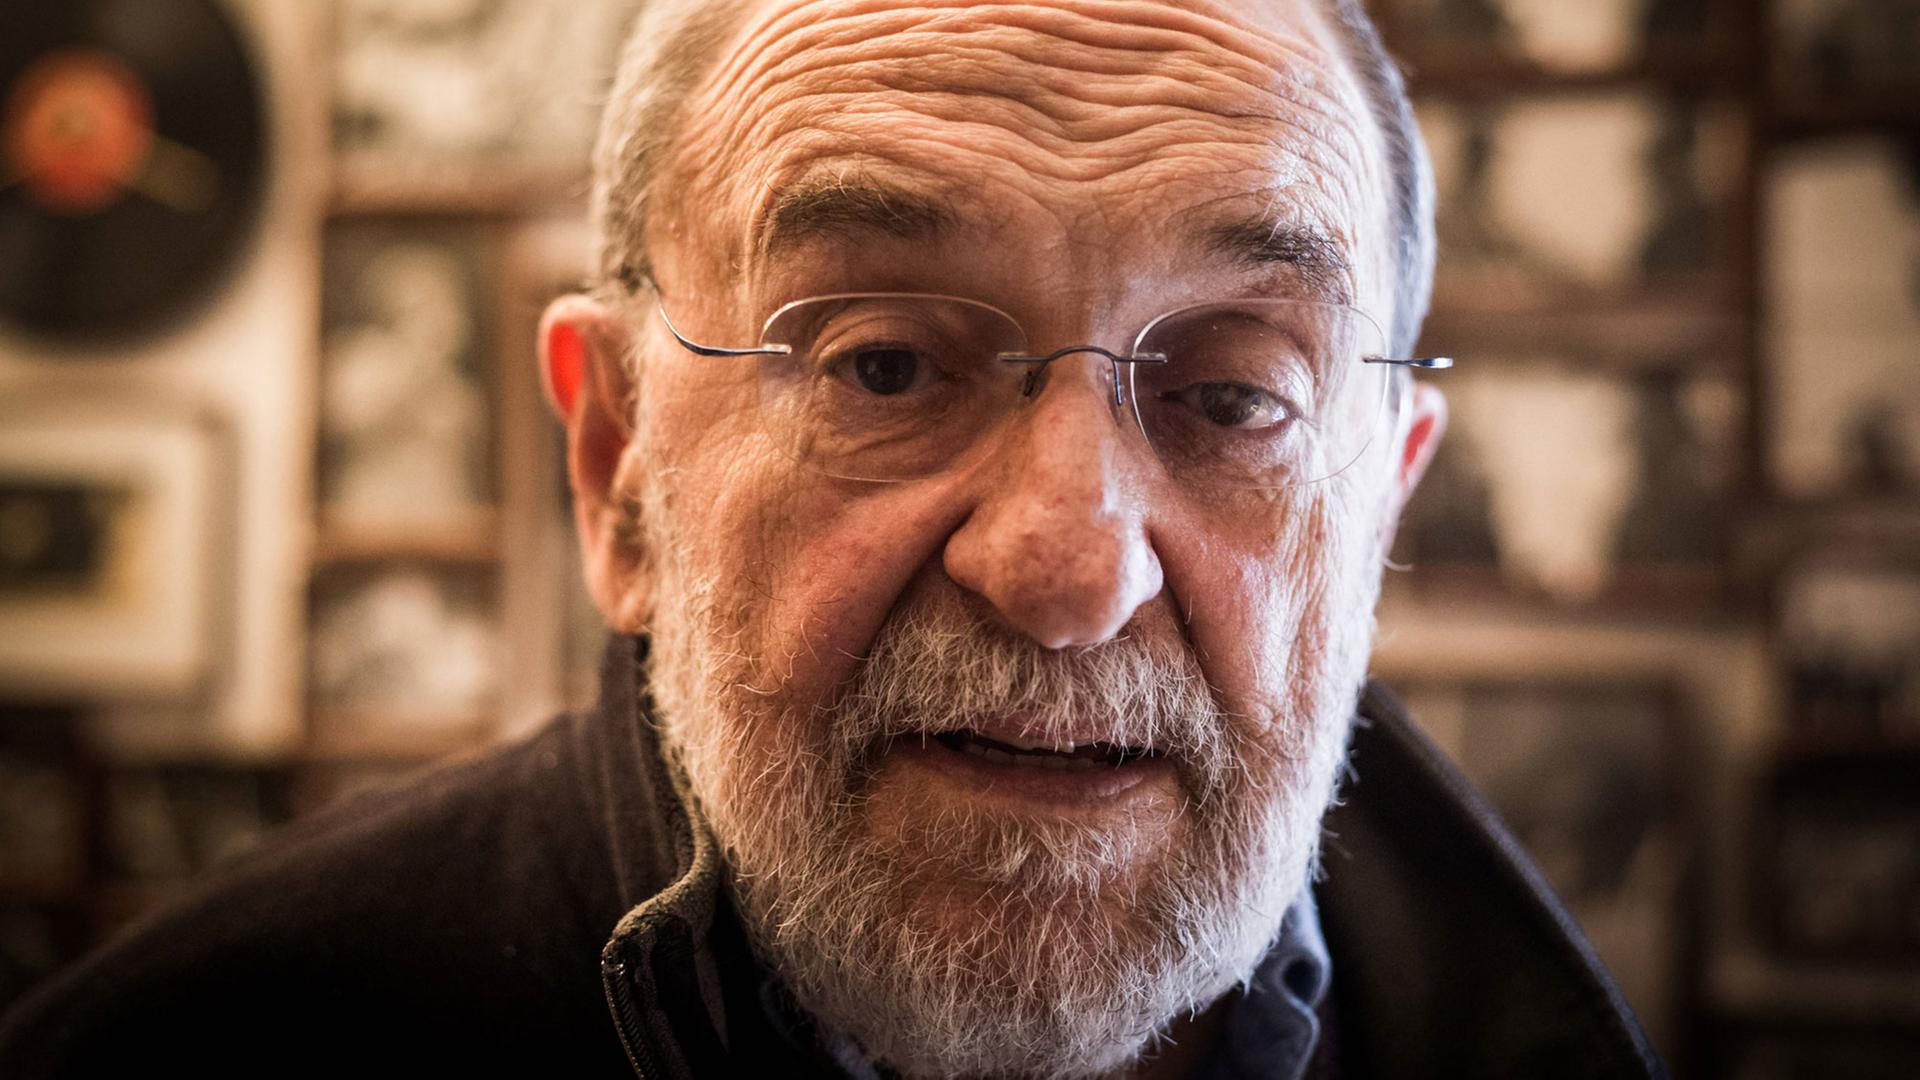 Der Radiomoderator José Duarte - er produziert seine Radioshow "5 minutos" seit 50 Jahren.